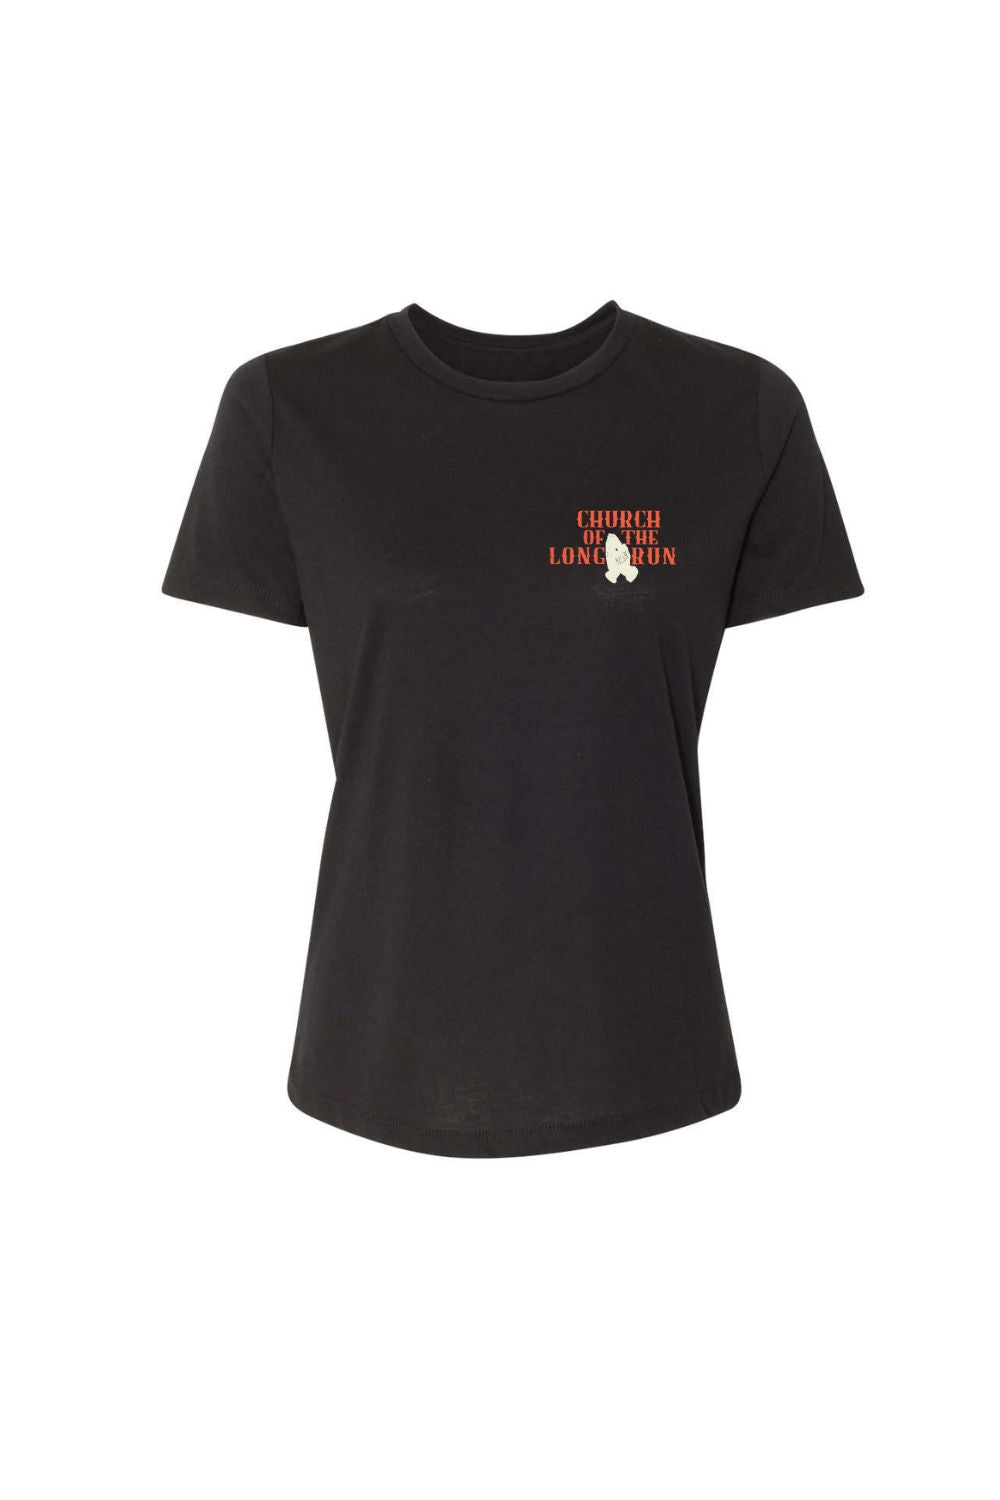 Church Of The Long Run Women's T-shirt